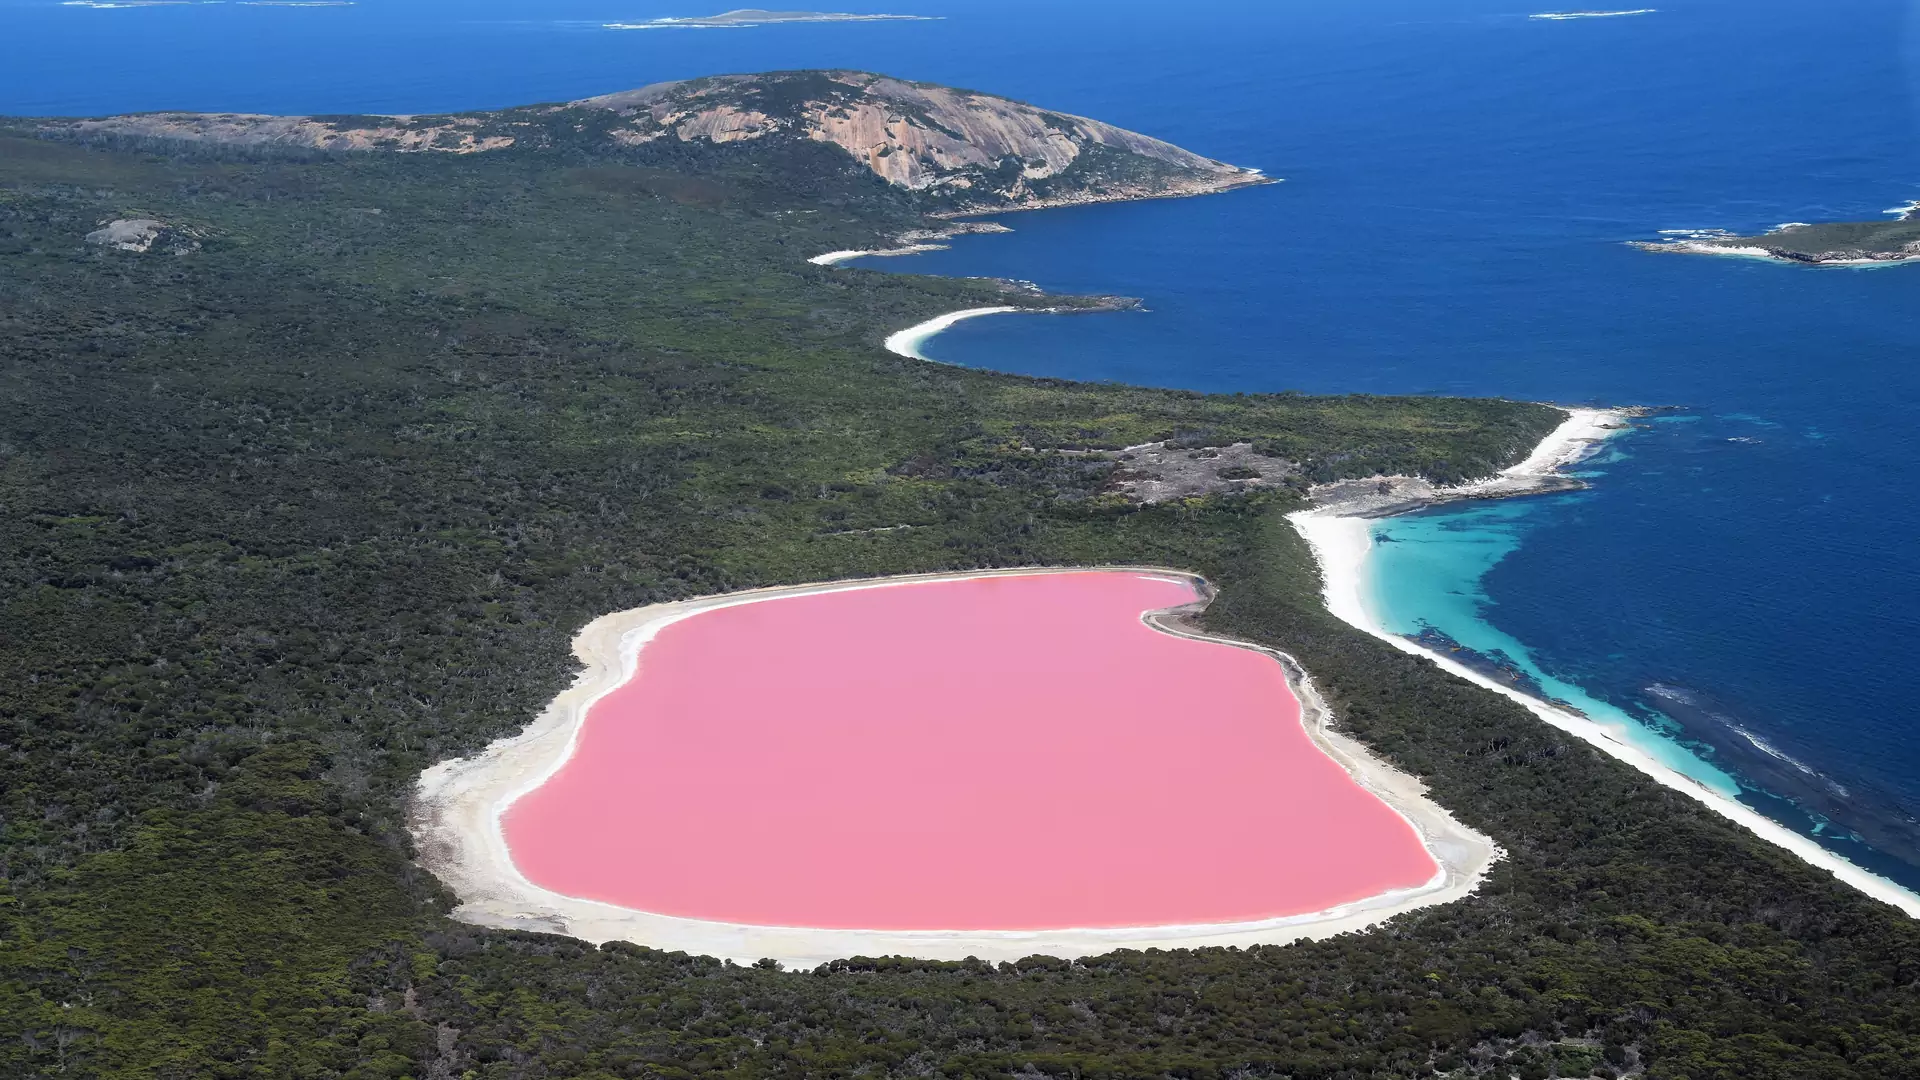 Gdzie znajduje się słynne różowe jezioro? 18 pytań dla prawdziwych podróżników